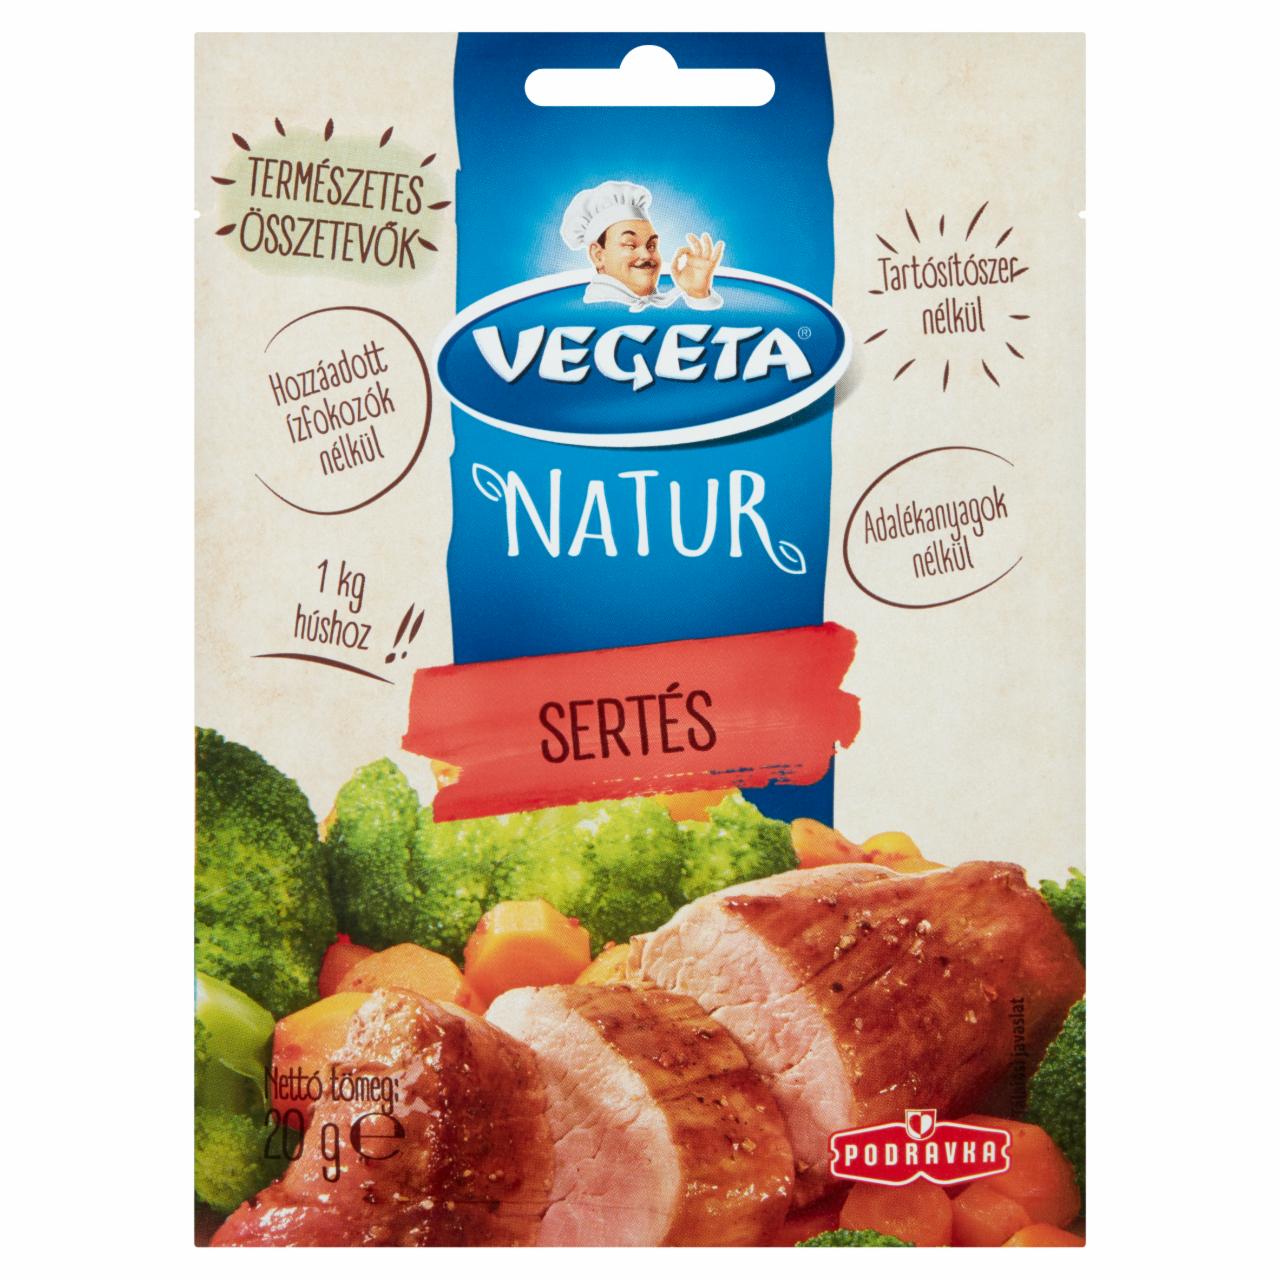 Képek - Vegeta Natur sertés fűszerkeverék 20 g